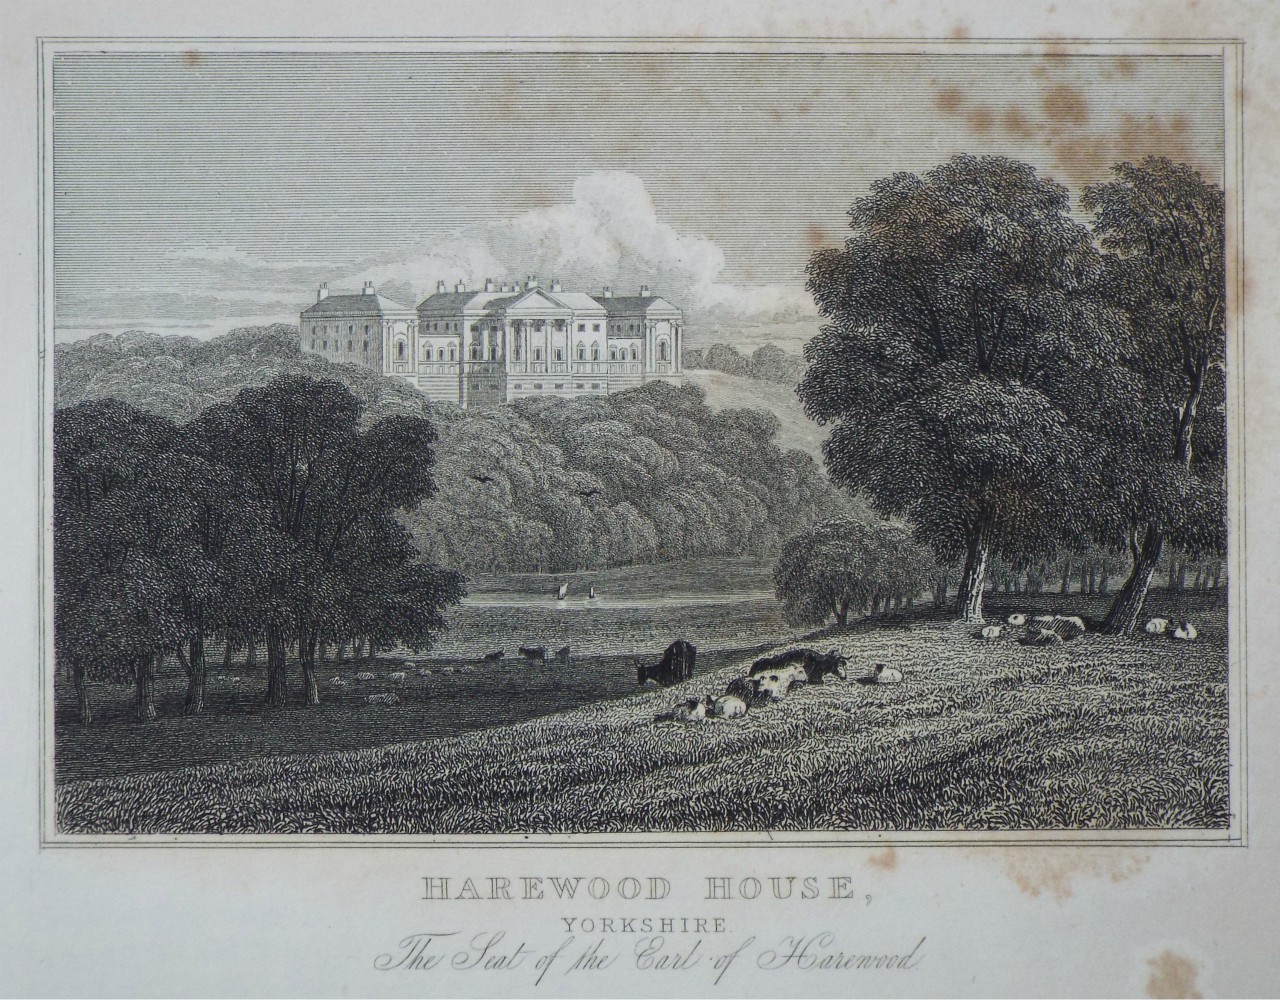 Esholt House Yorkshire Antique Print 1829 